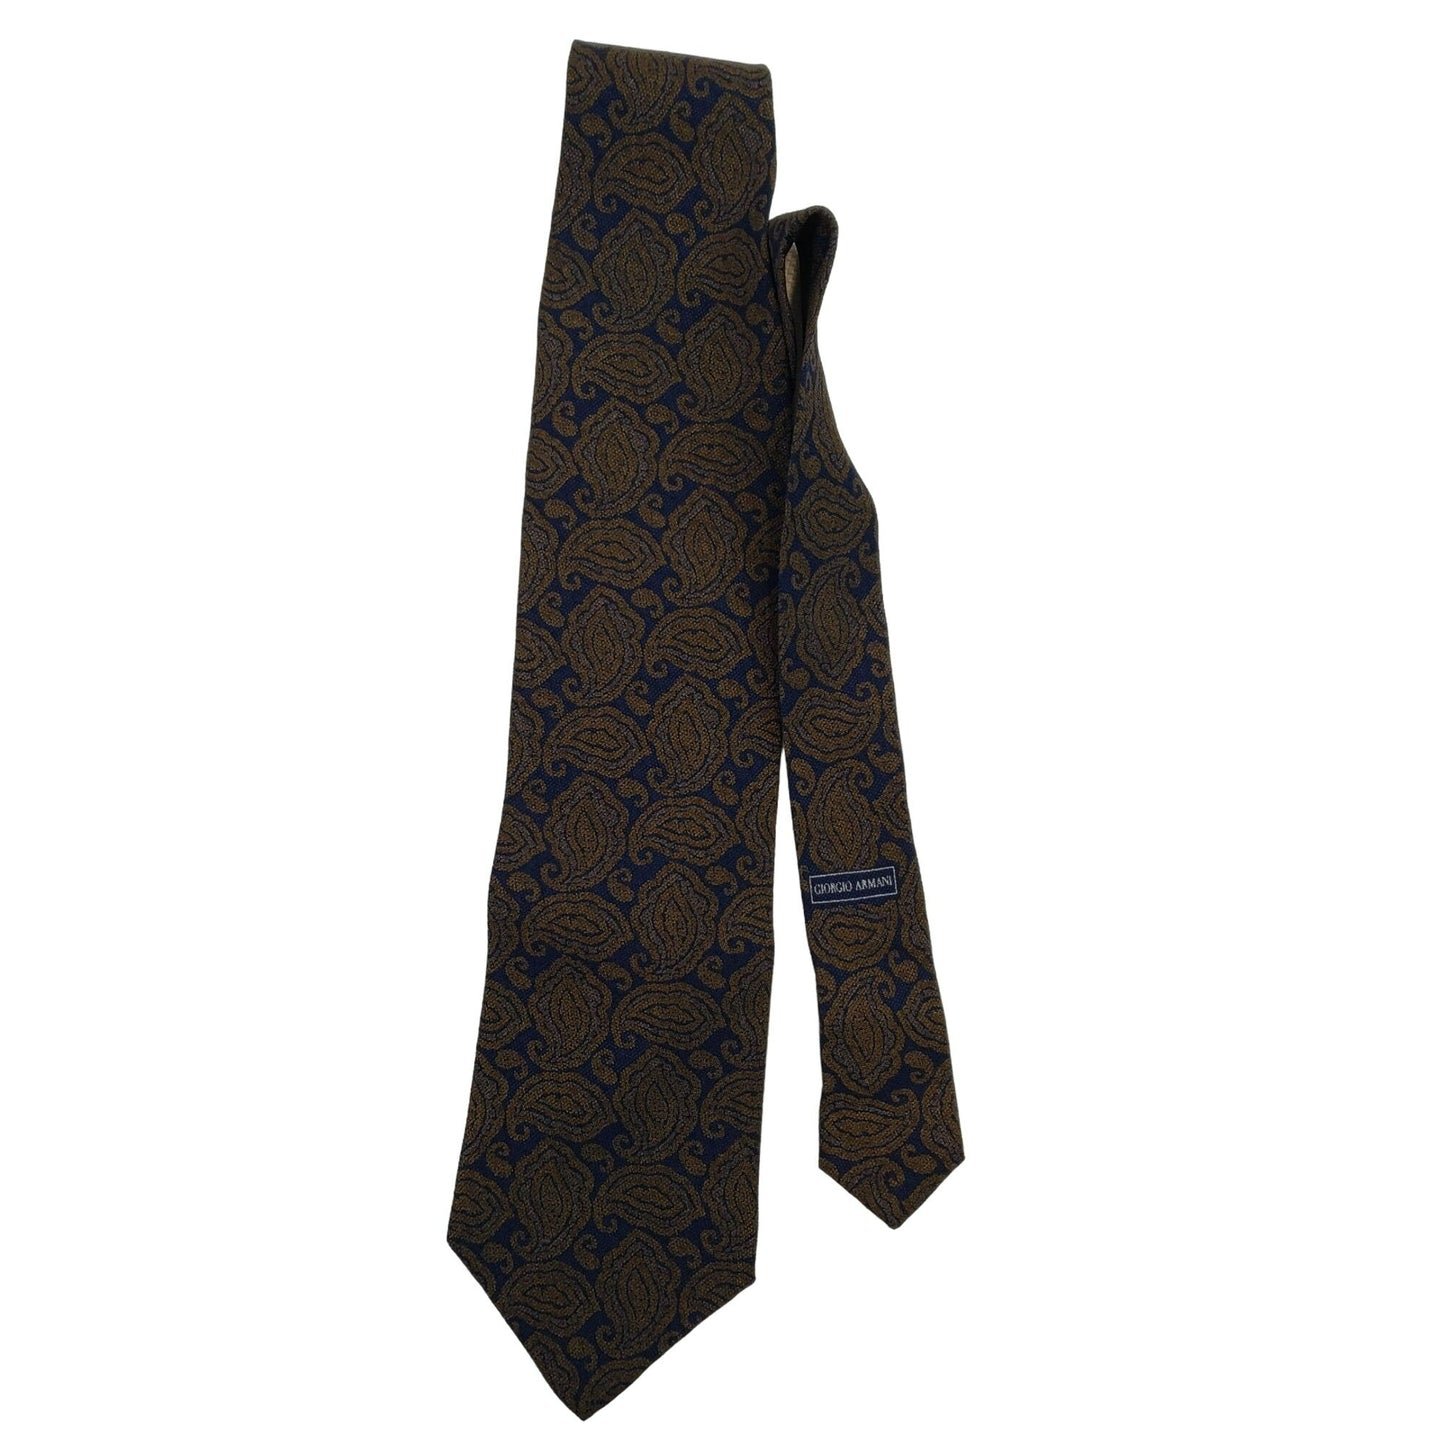 Giorgio Armani Cravatte Silk Tie